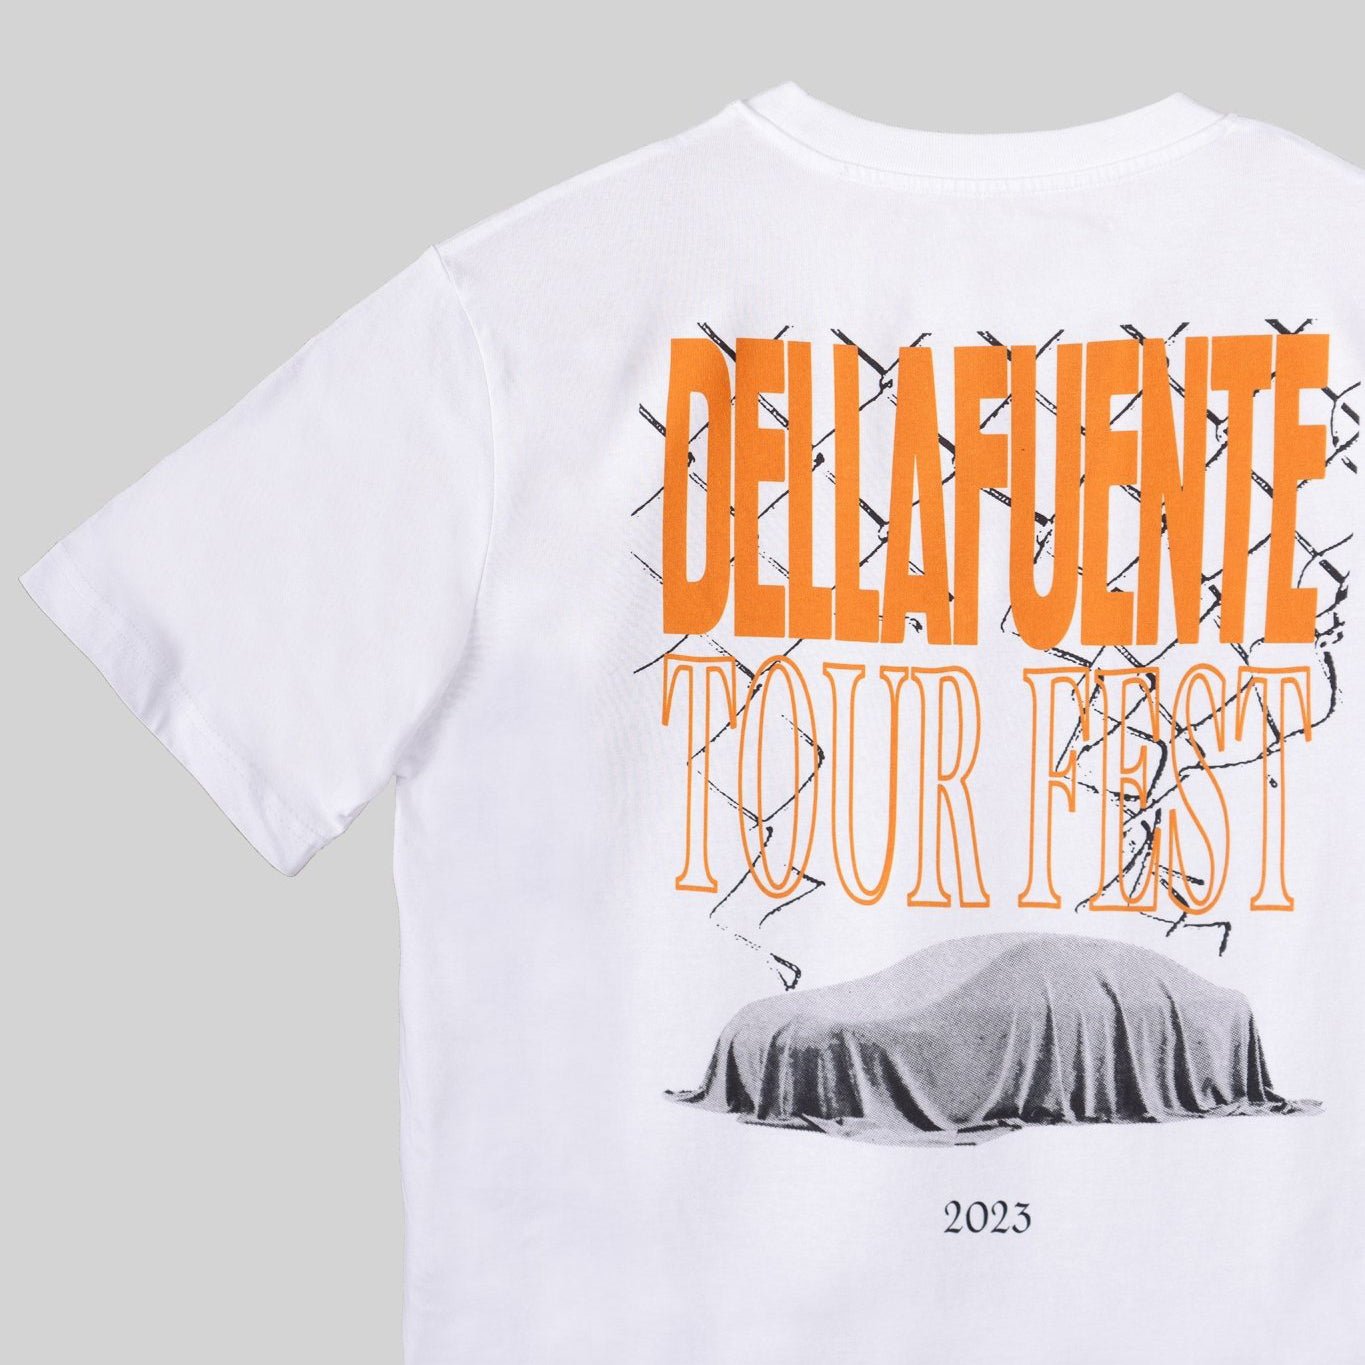 Dellafuente, Camiseta Tour Fest